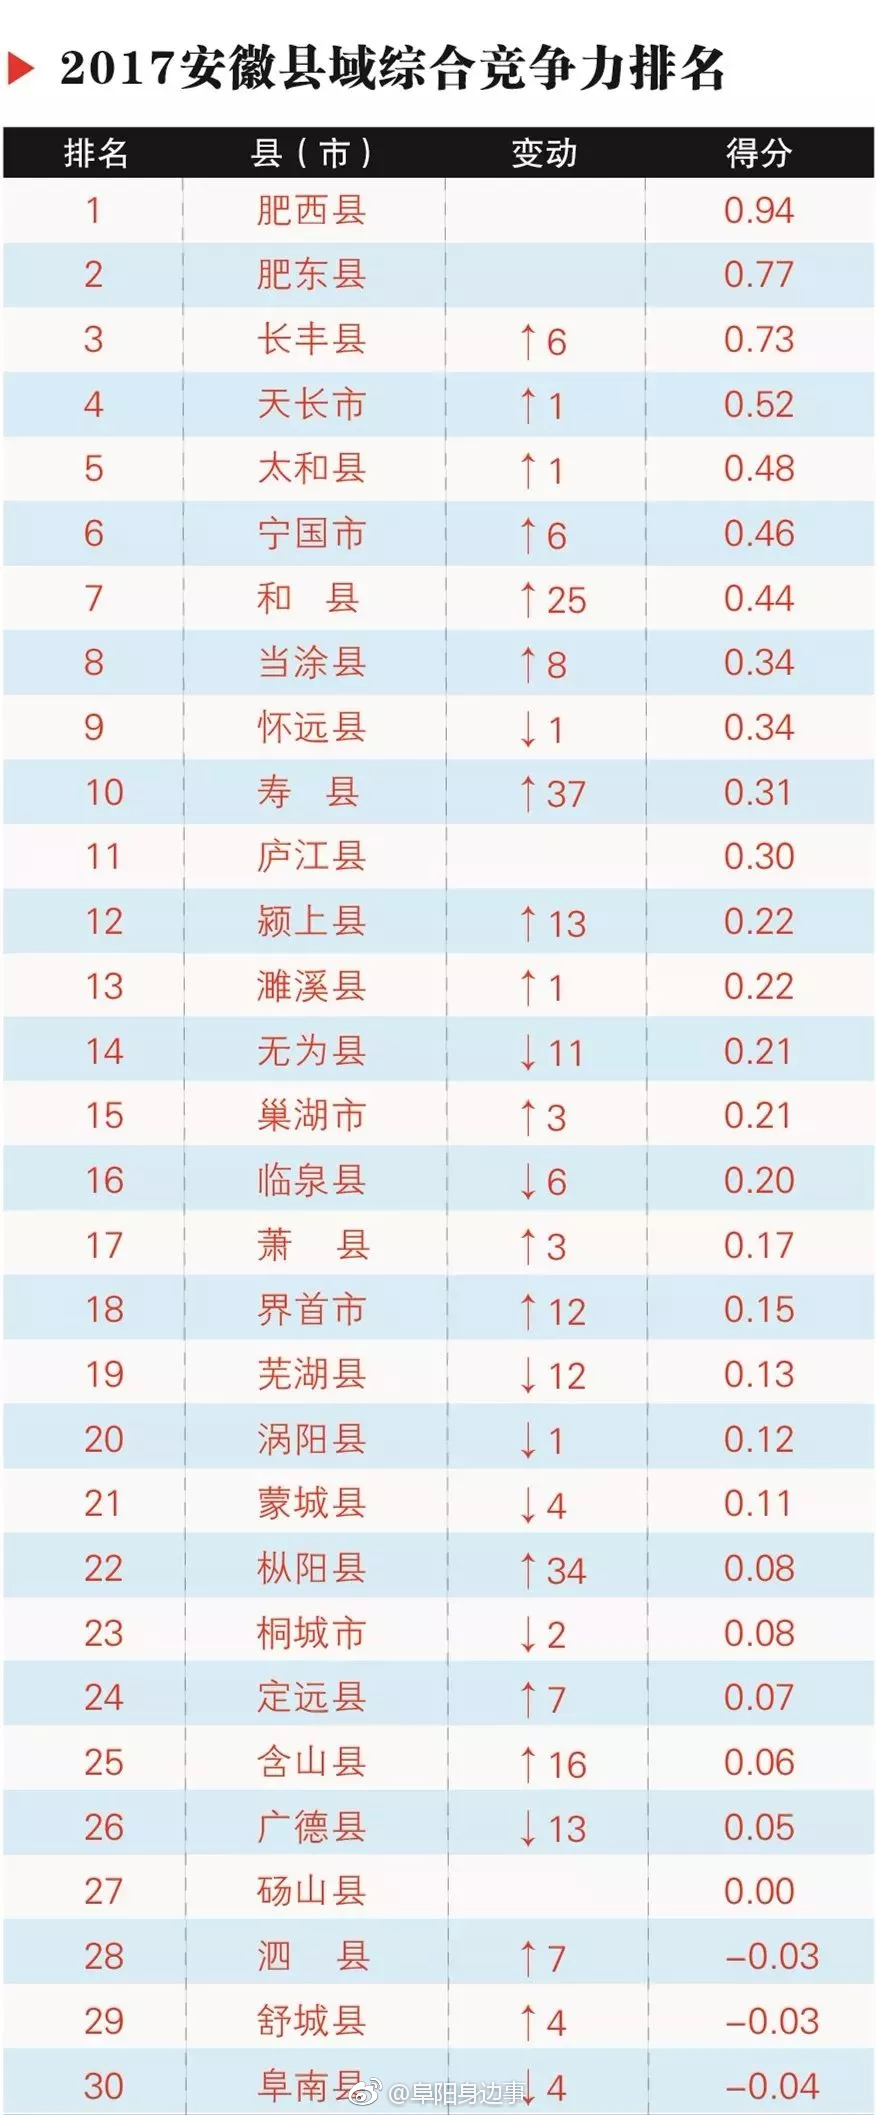 2017安徽县域经济竞争力排行榜出炉:太和第5